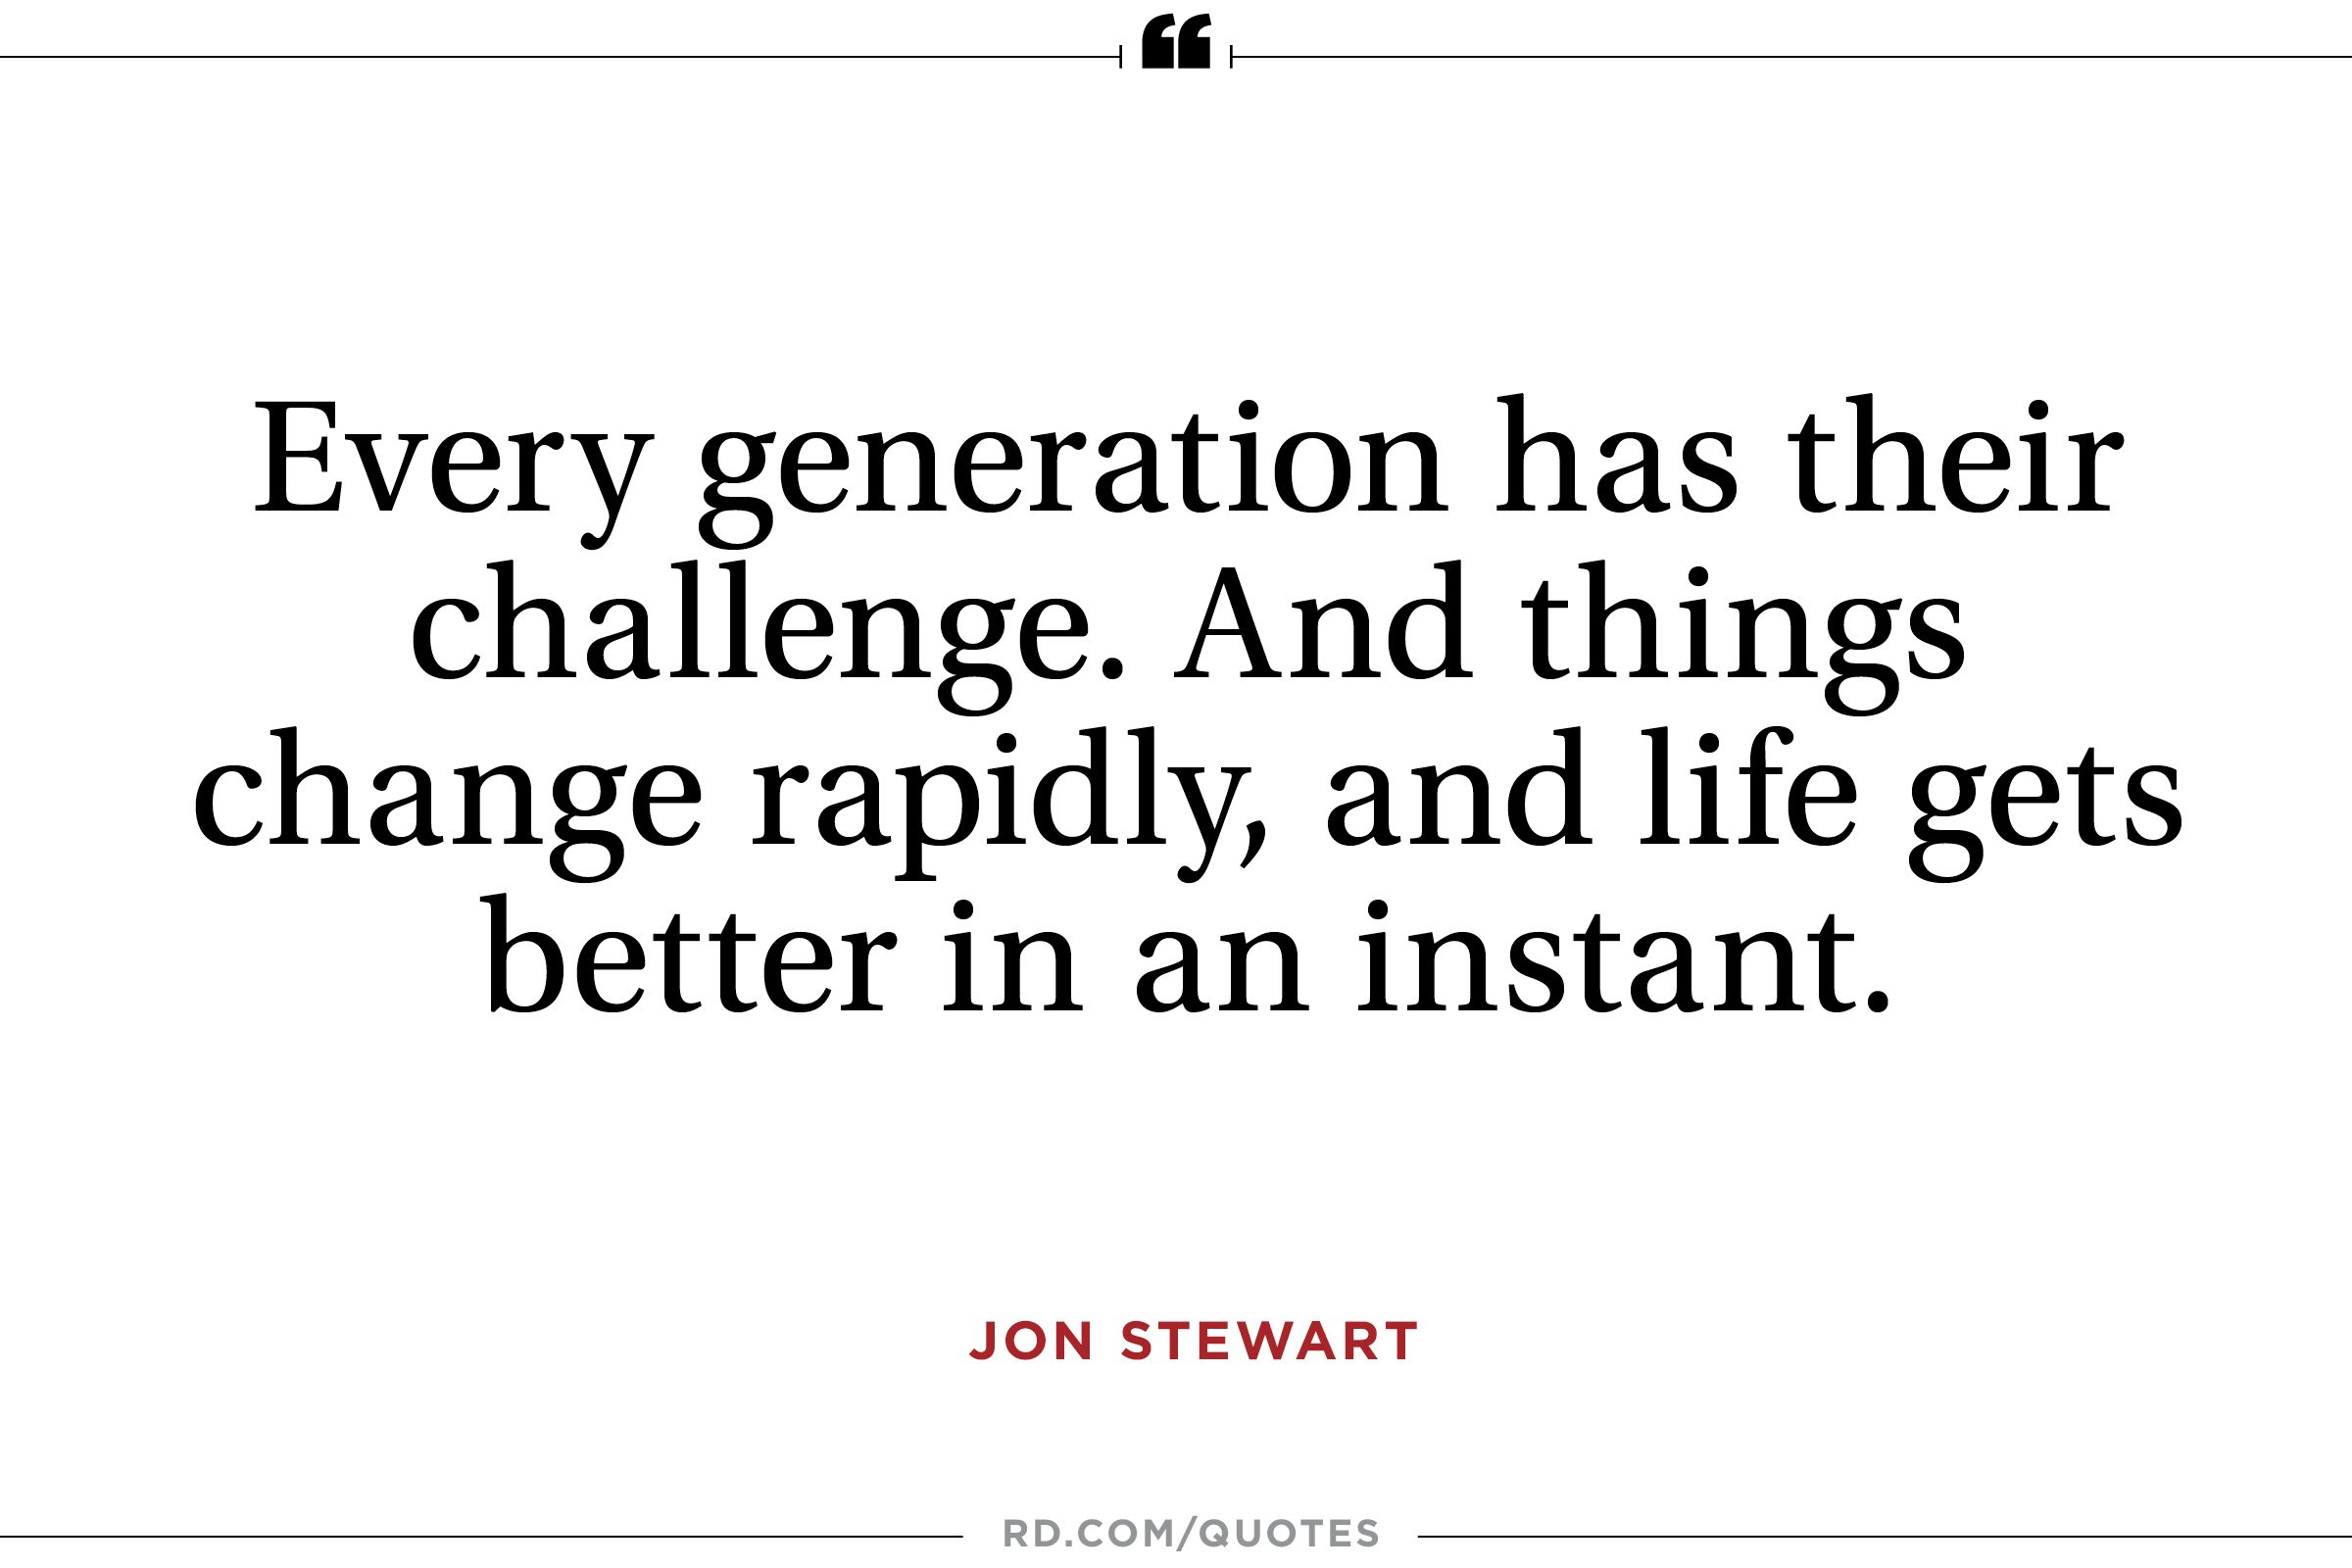 Jon Stewart on the Future